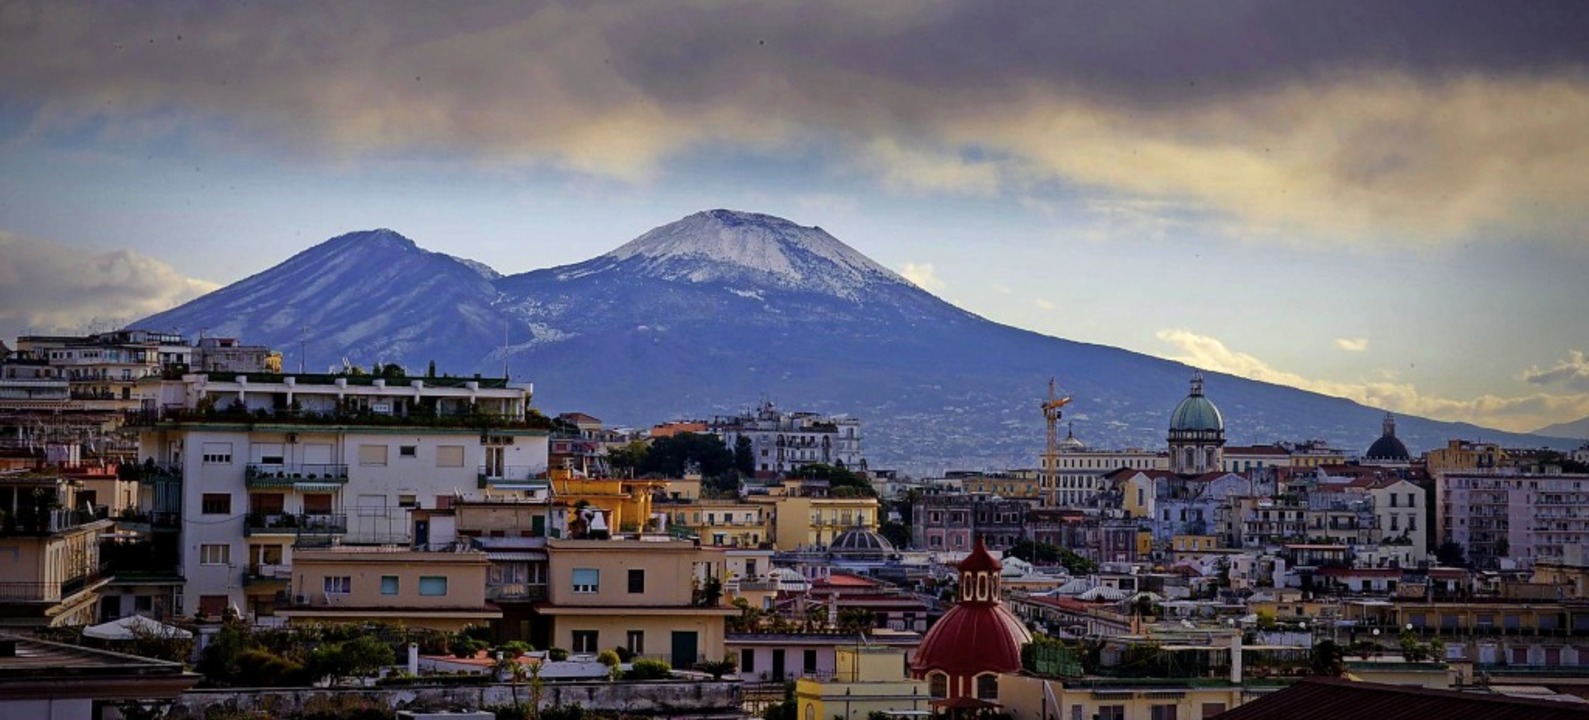 Ein Panoramablick auf Neapel mit dem Vesuv im Hintergrund  | Foto: Ciro Fusco